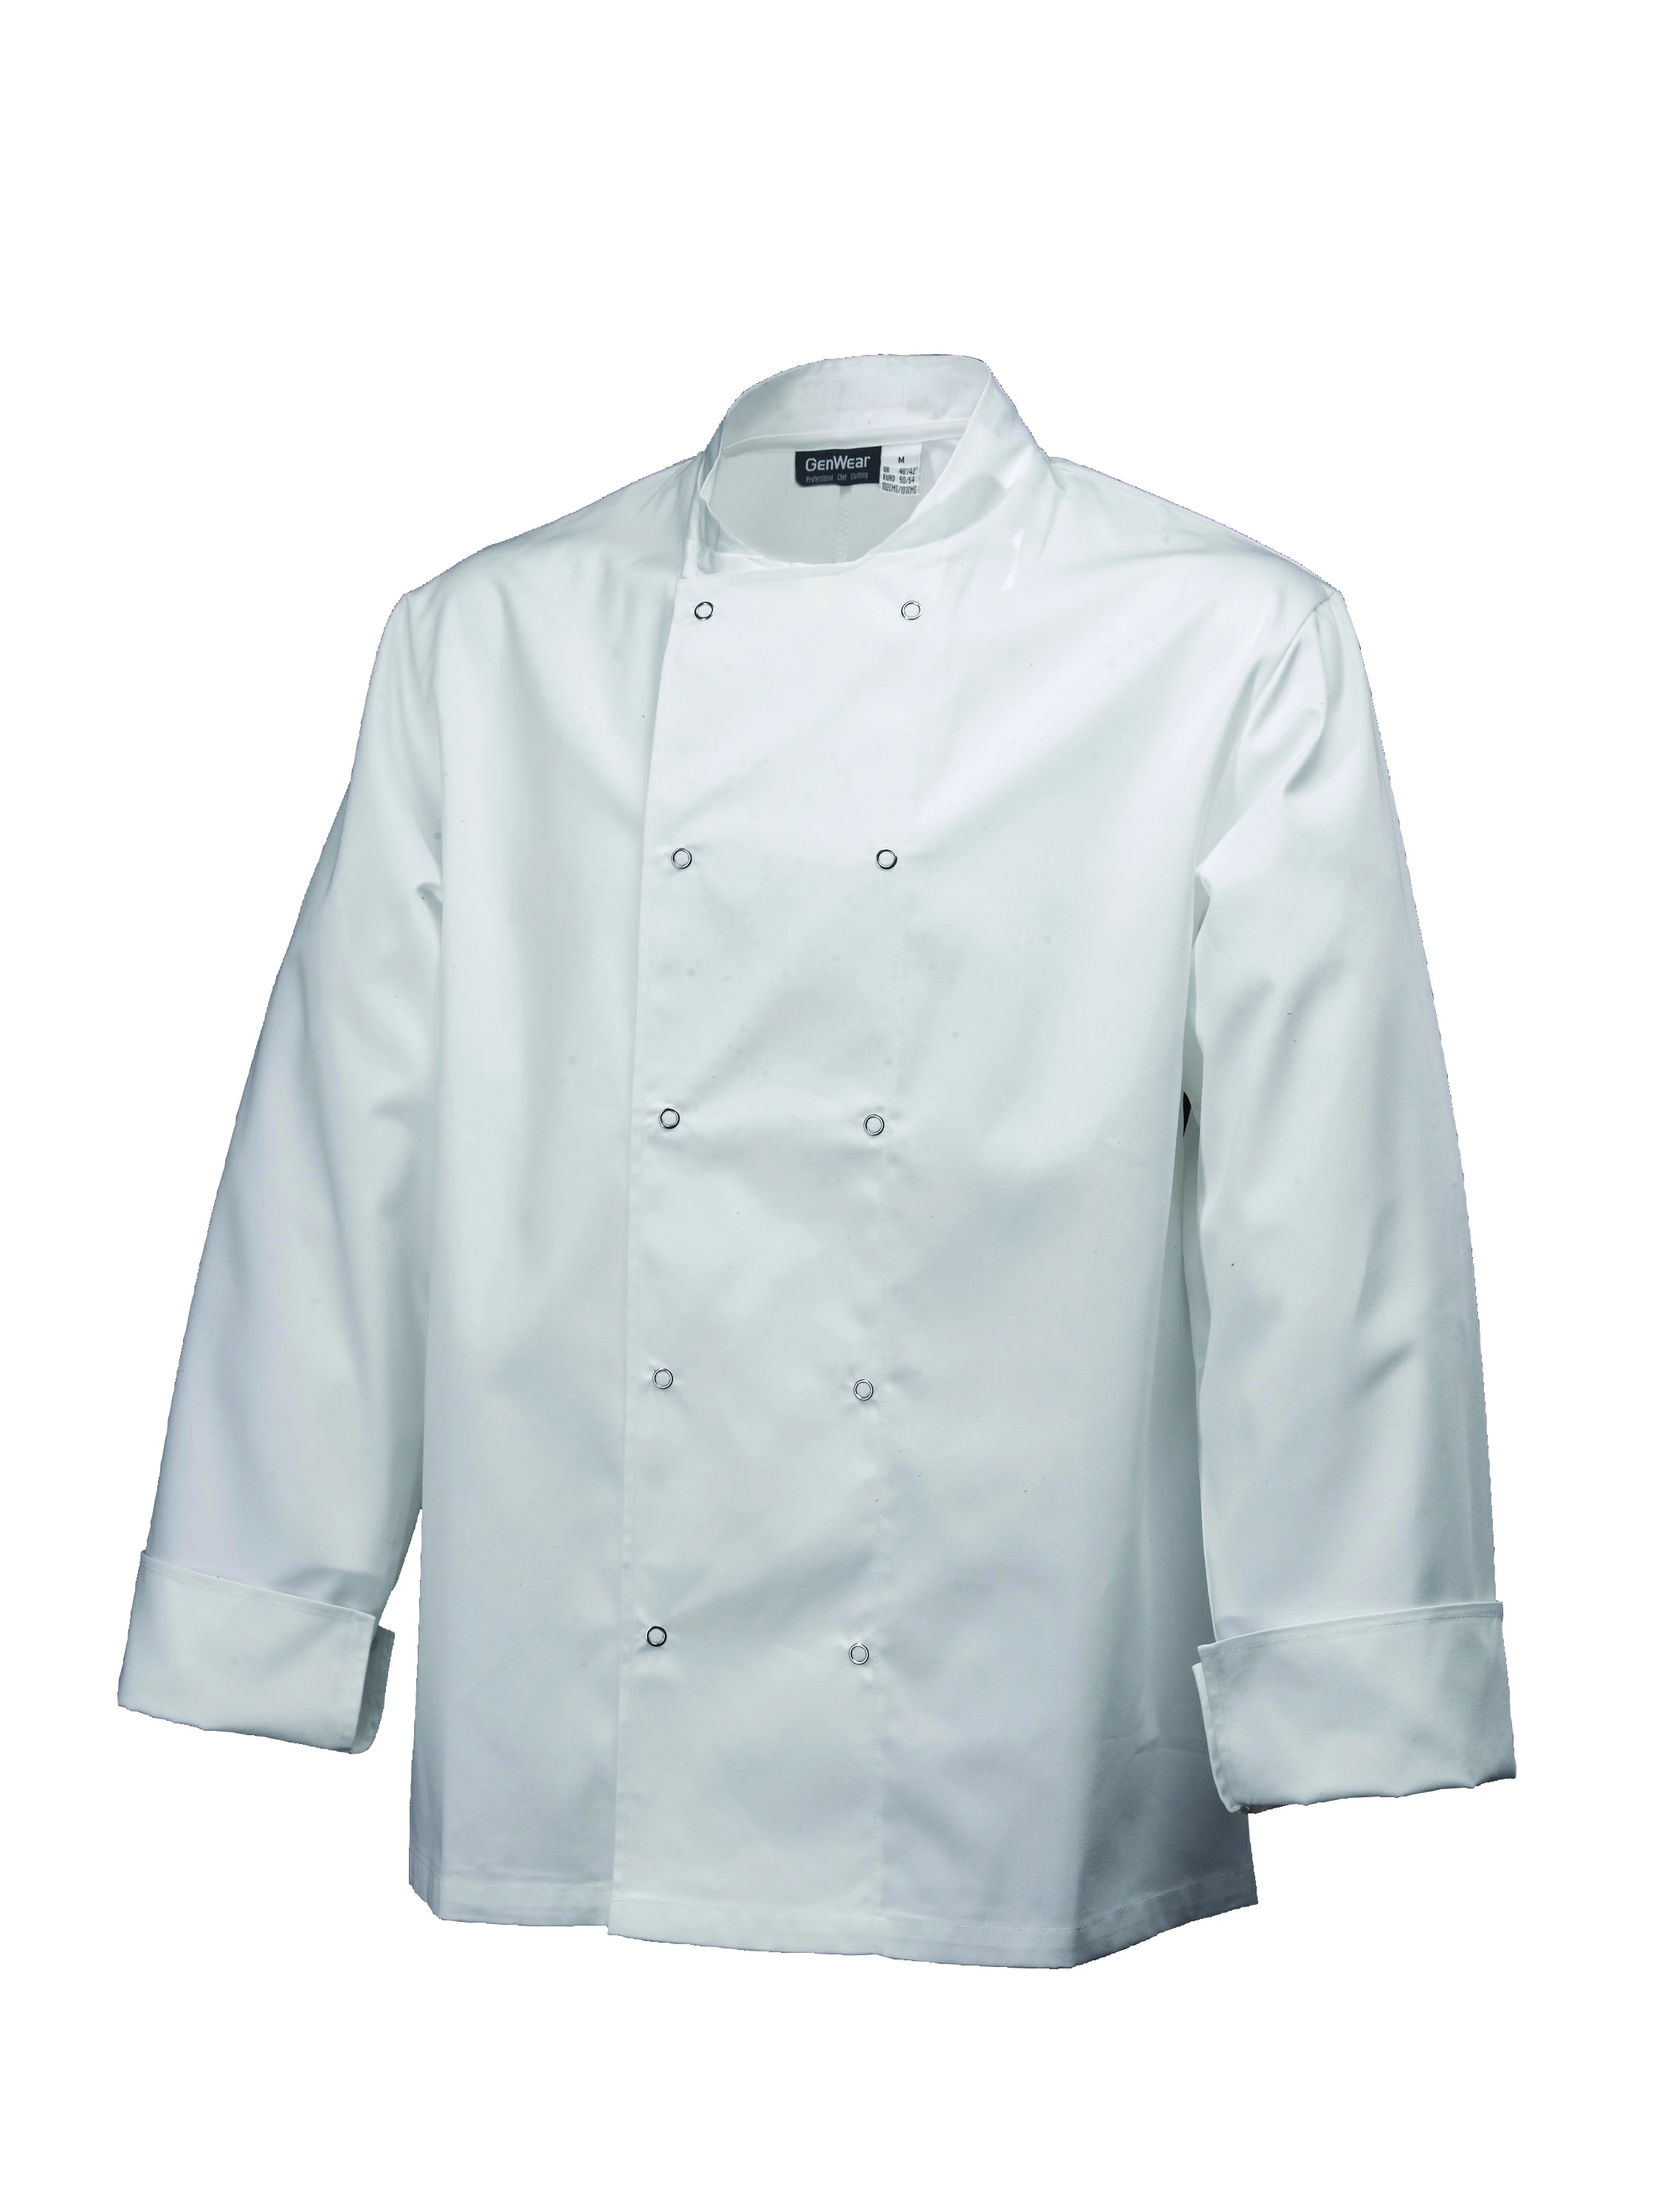 Basic Stud Jacket (Long Sleeve) White S Size